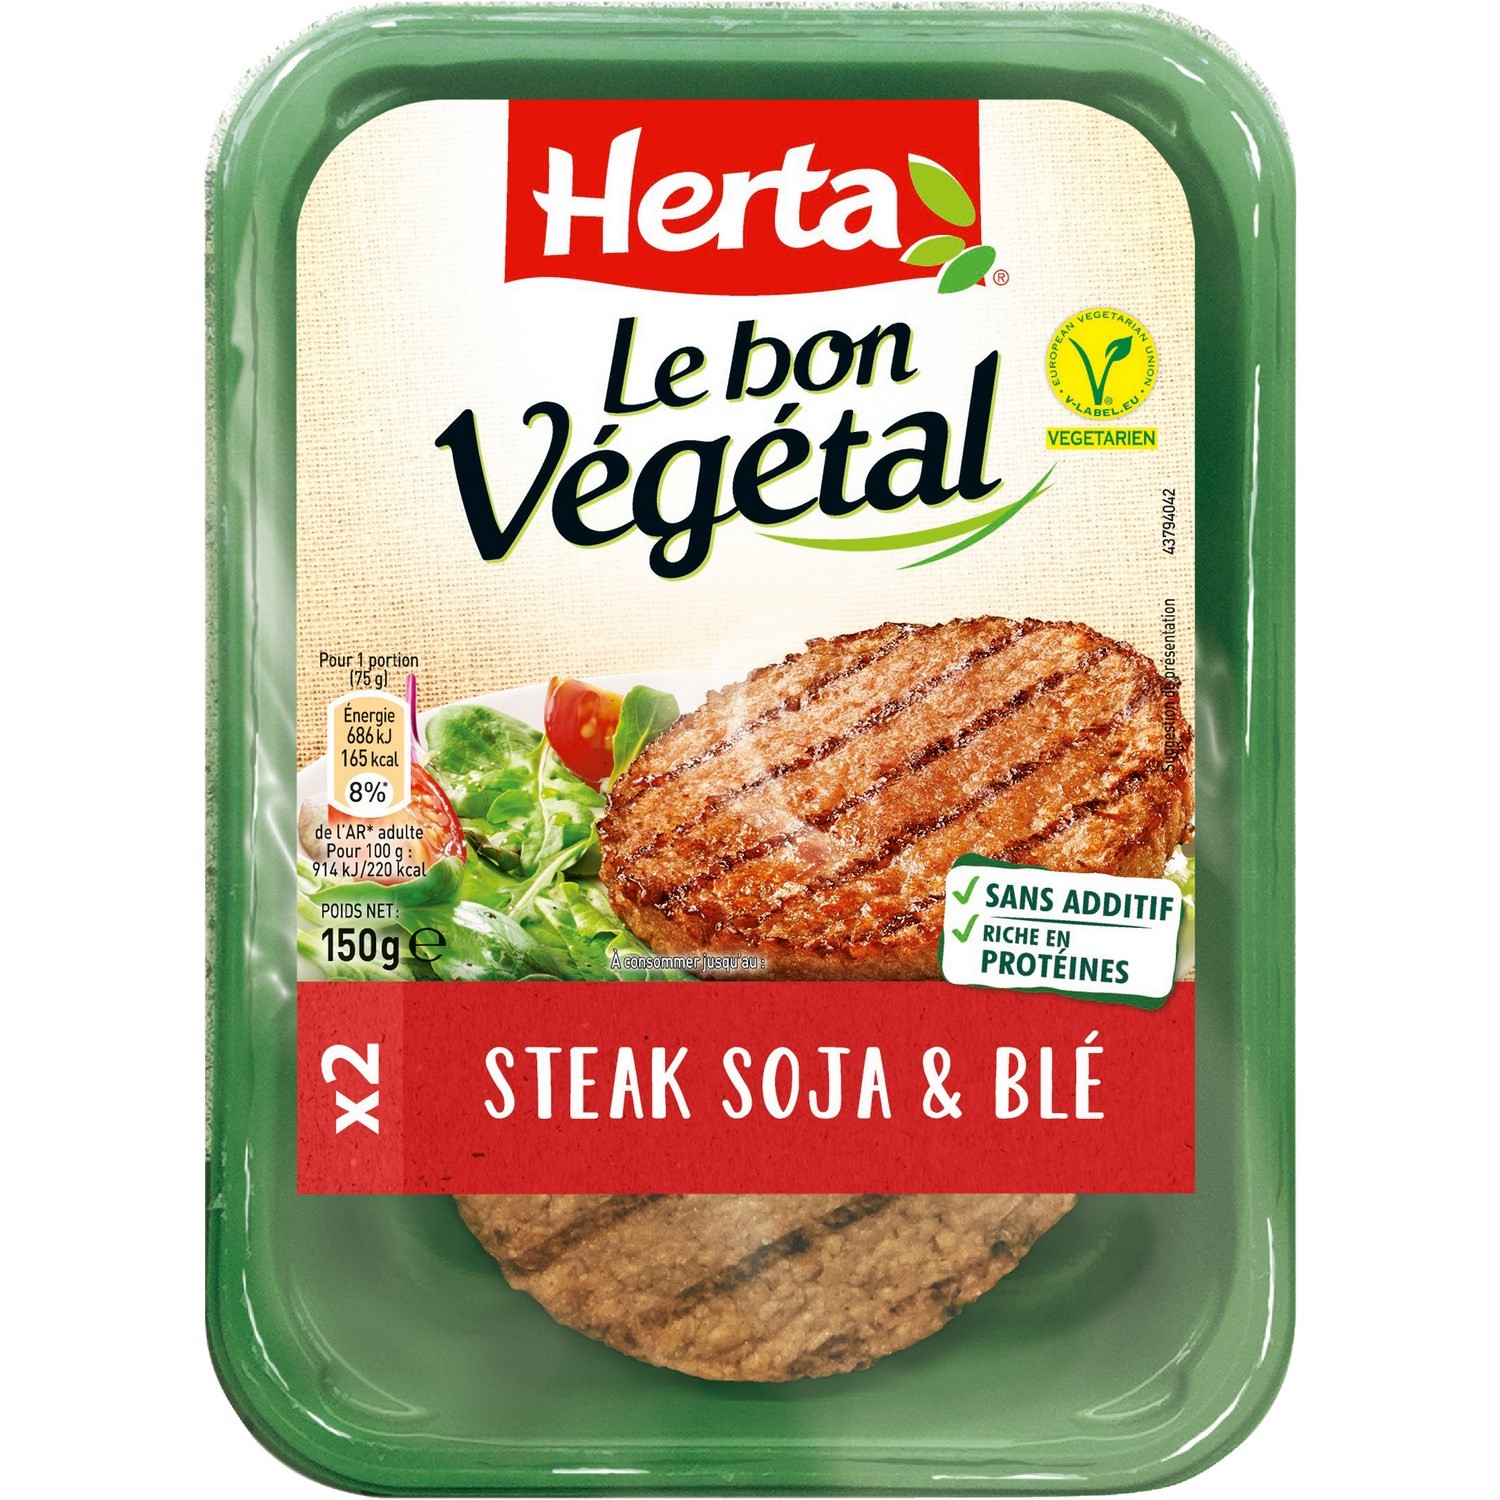 2 Steaks Soja & Blé "Le bon Végétal"